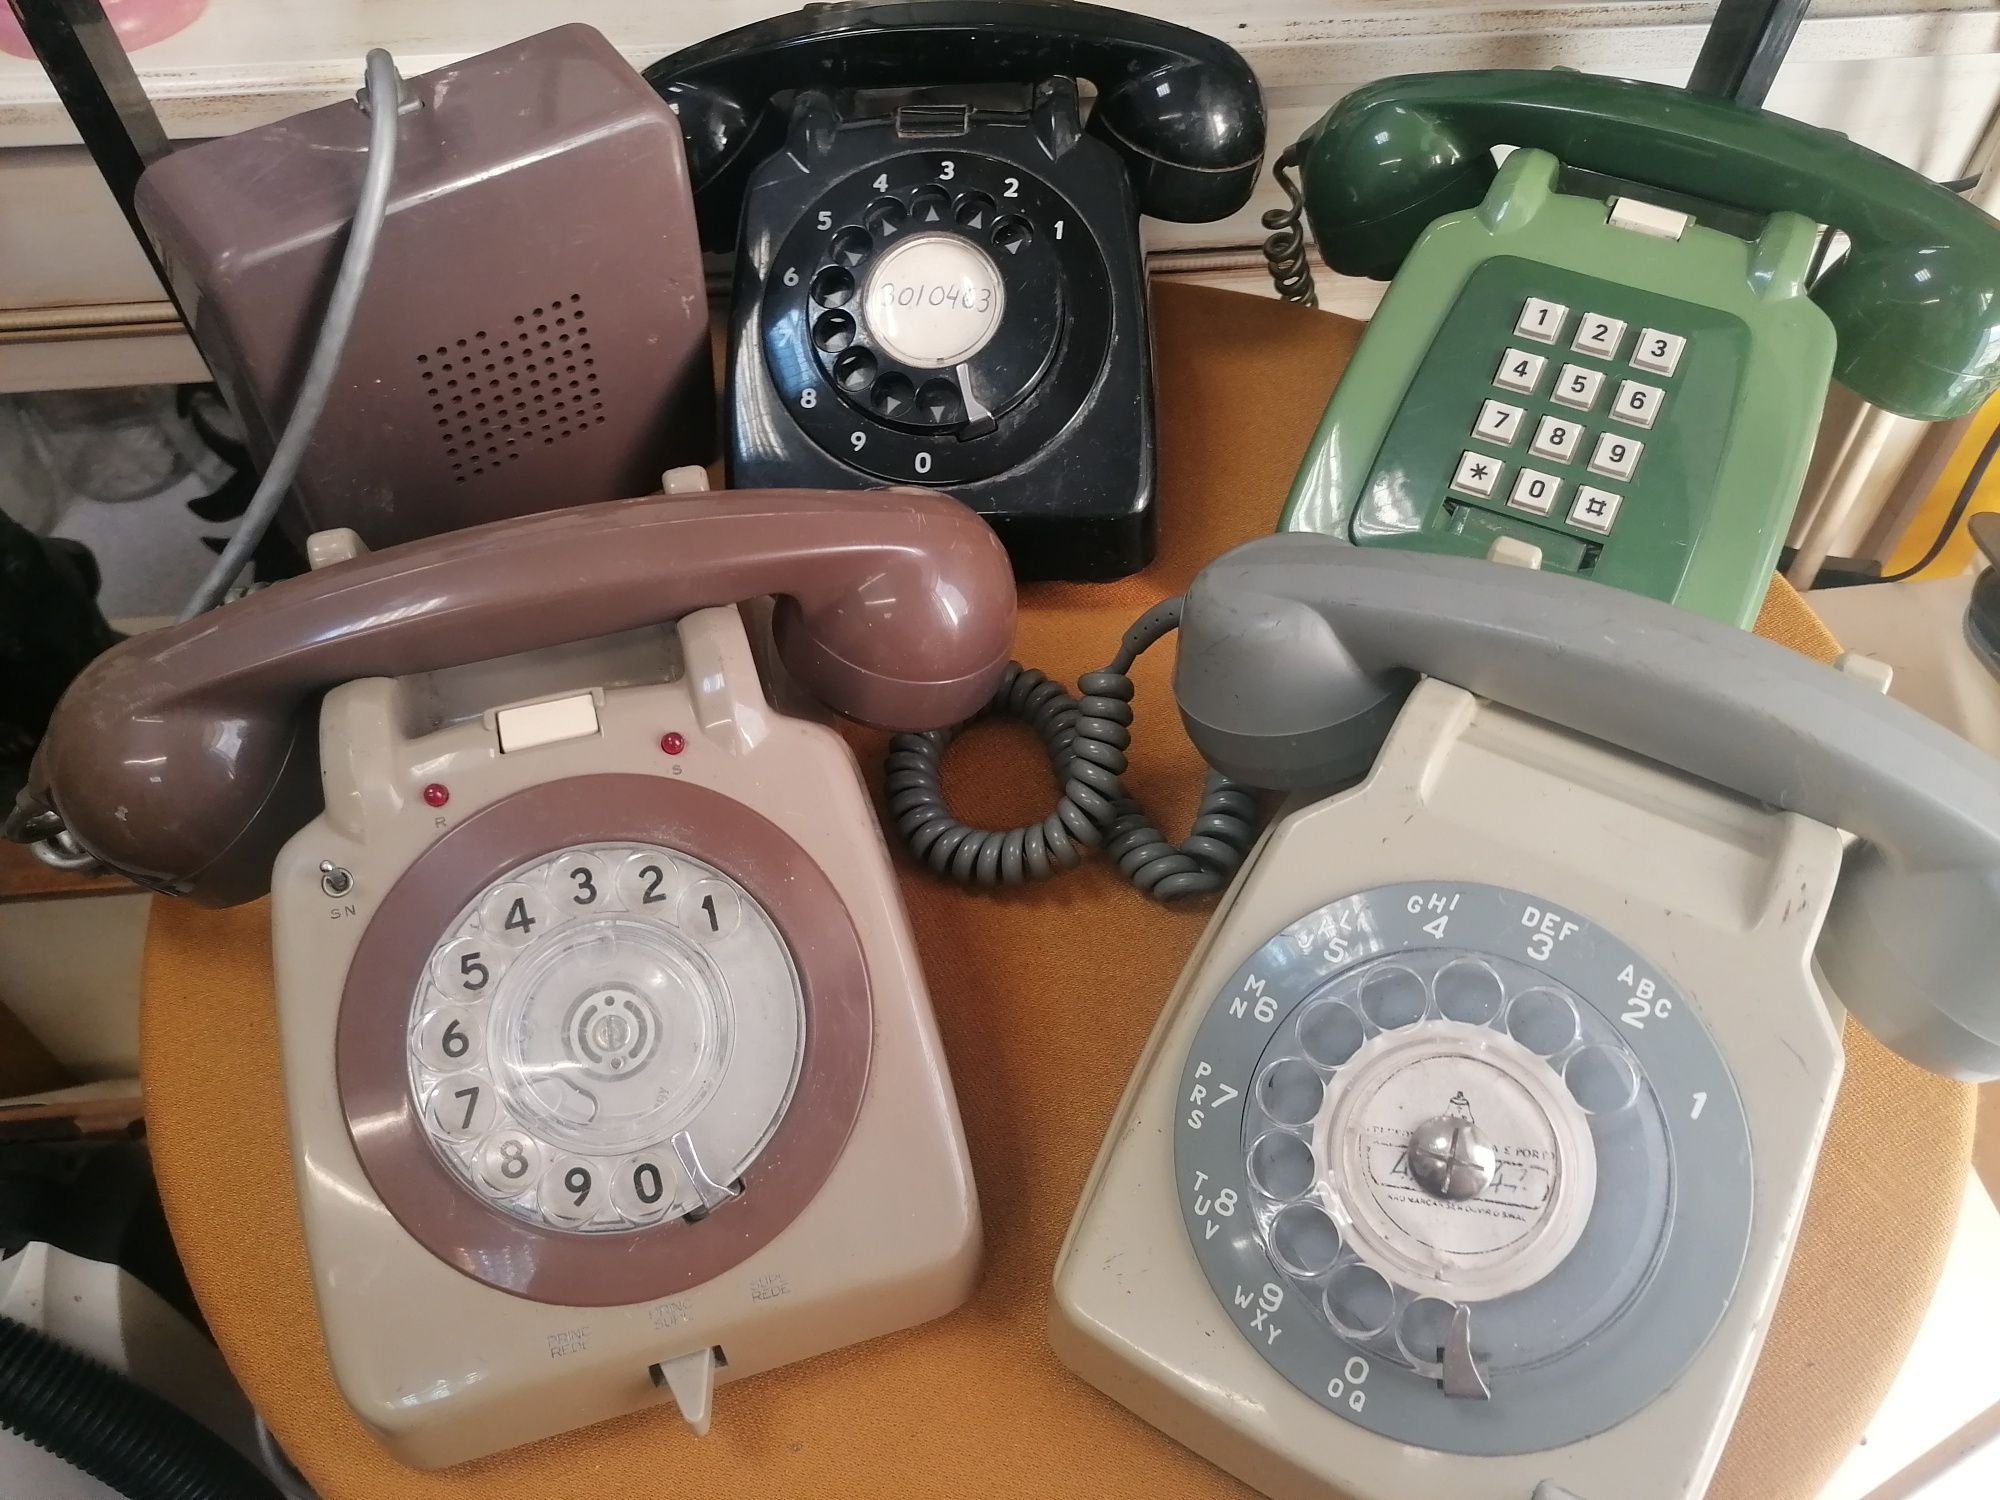 Conjunto de vários telefones (valores na descrição)

Telefone de disco